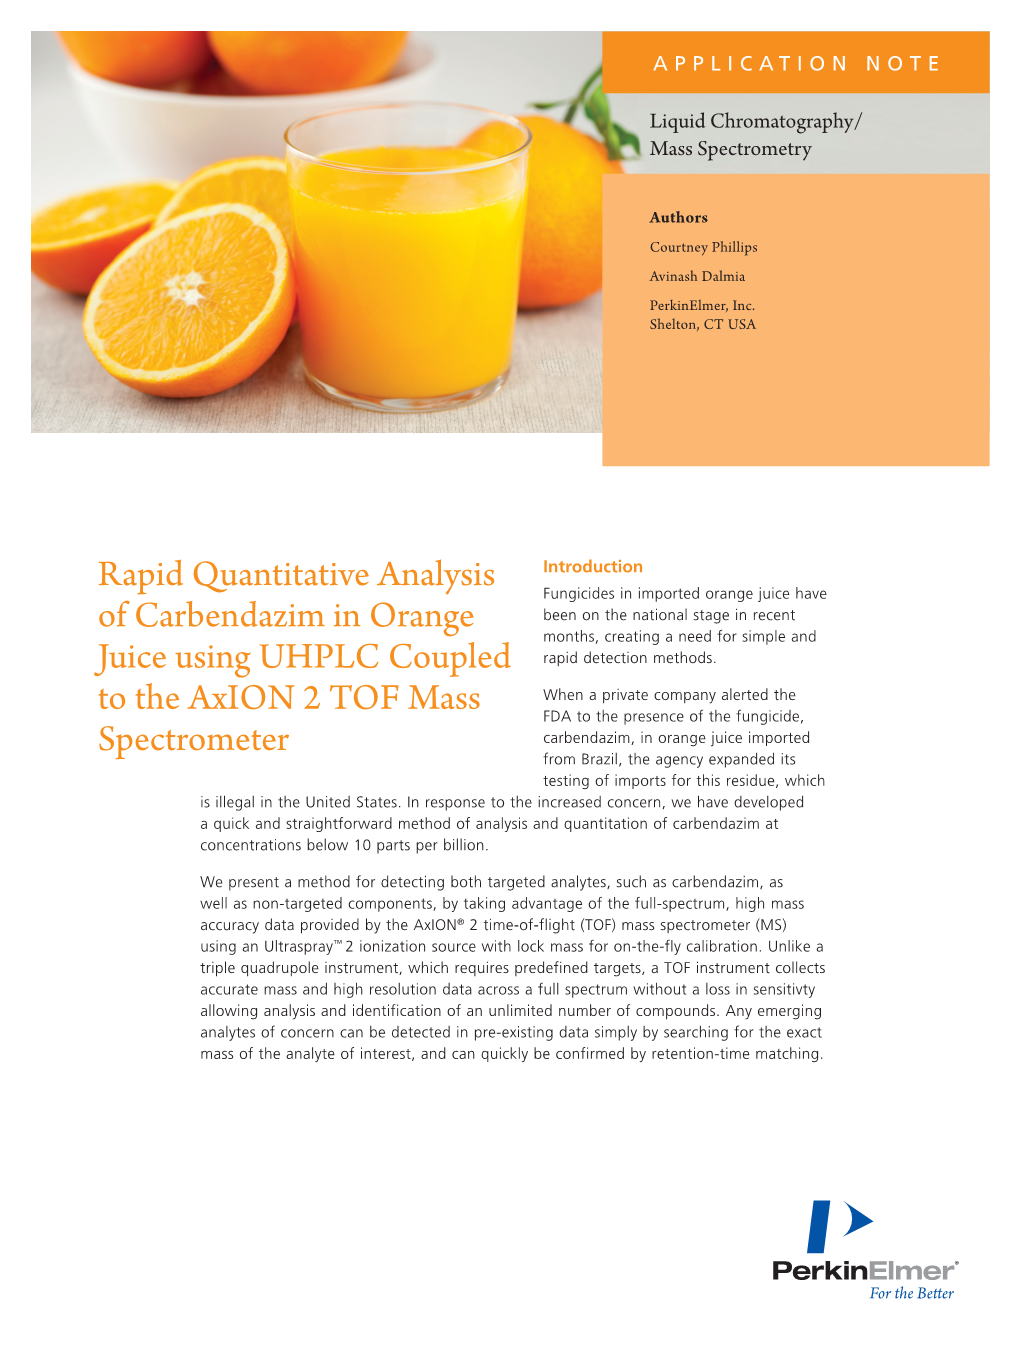 Rapid Quantitative Analysis of Carbendazim in Orange Juice